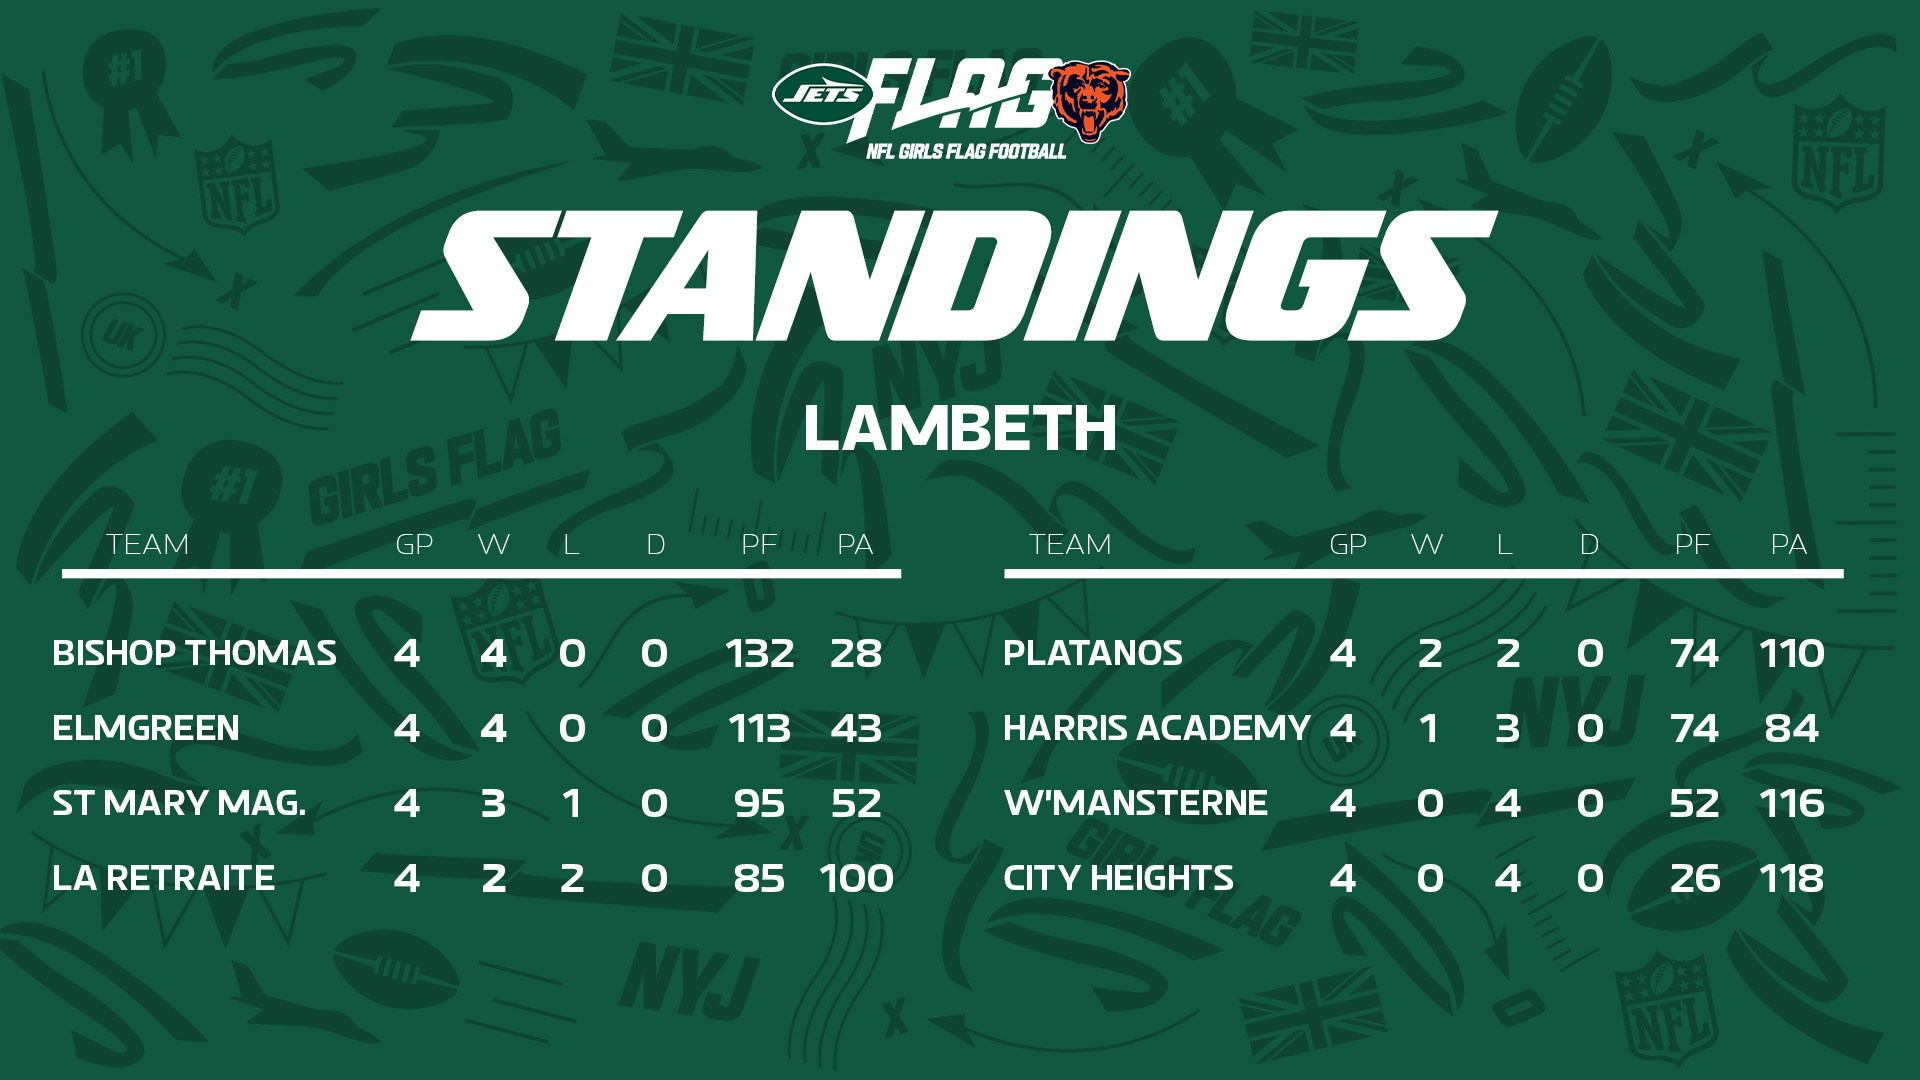 Lambeth Standings Week 4